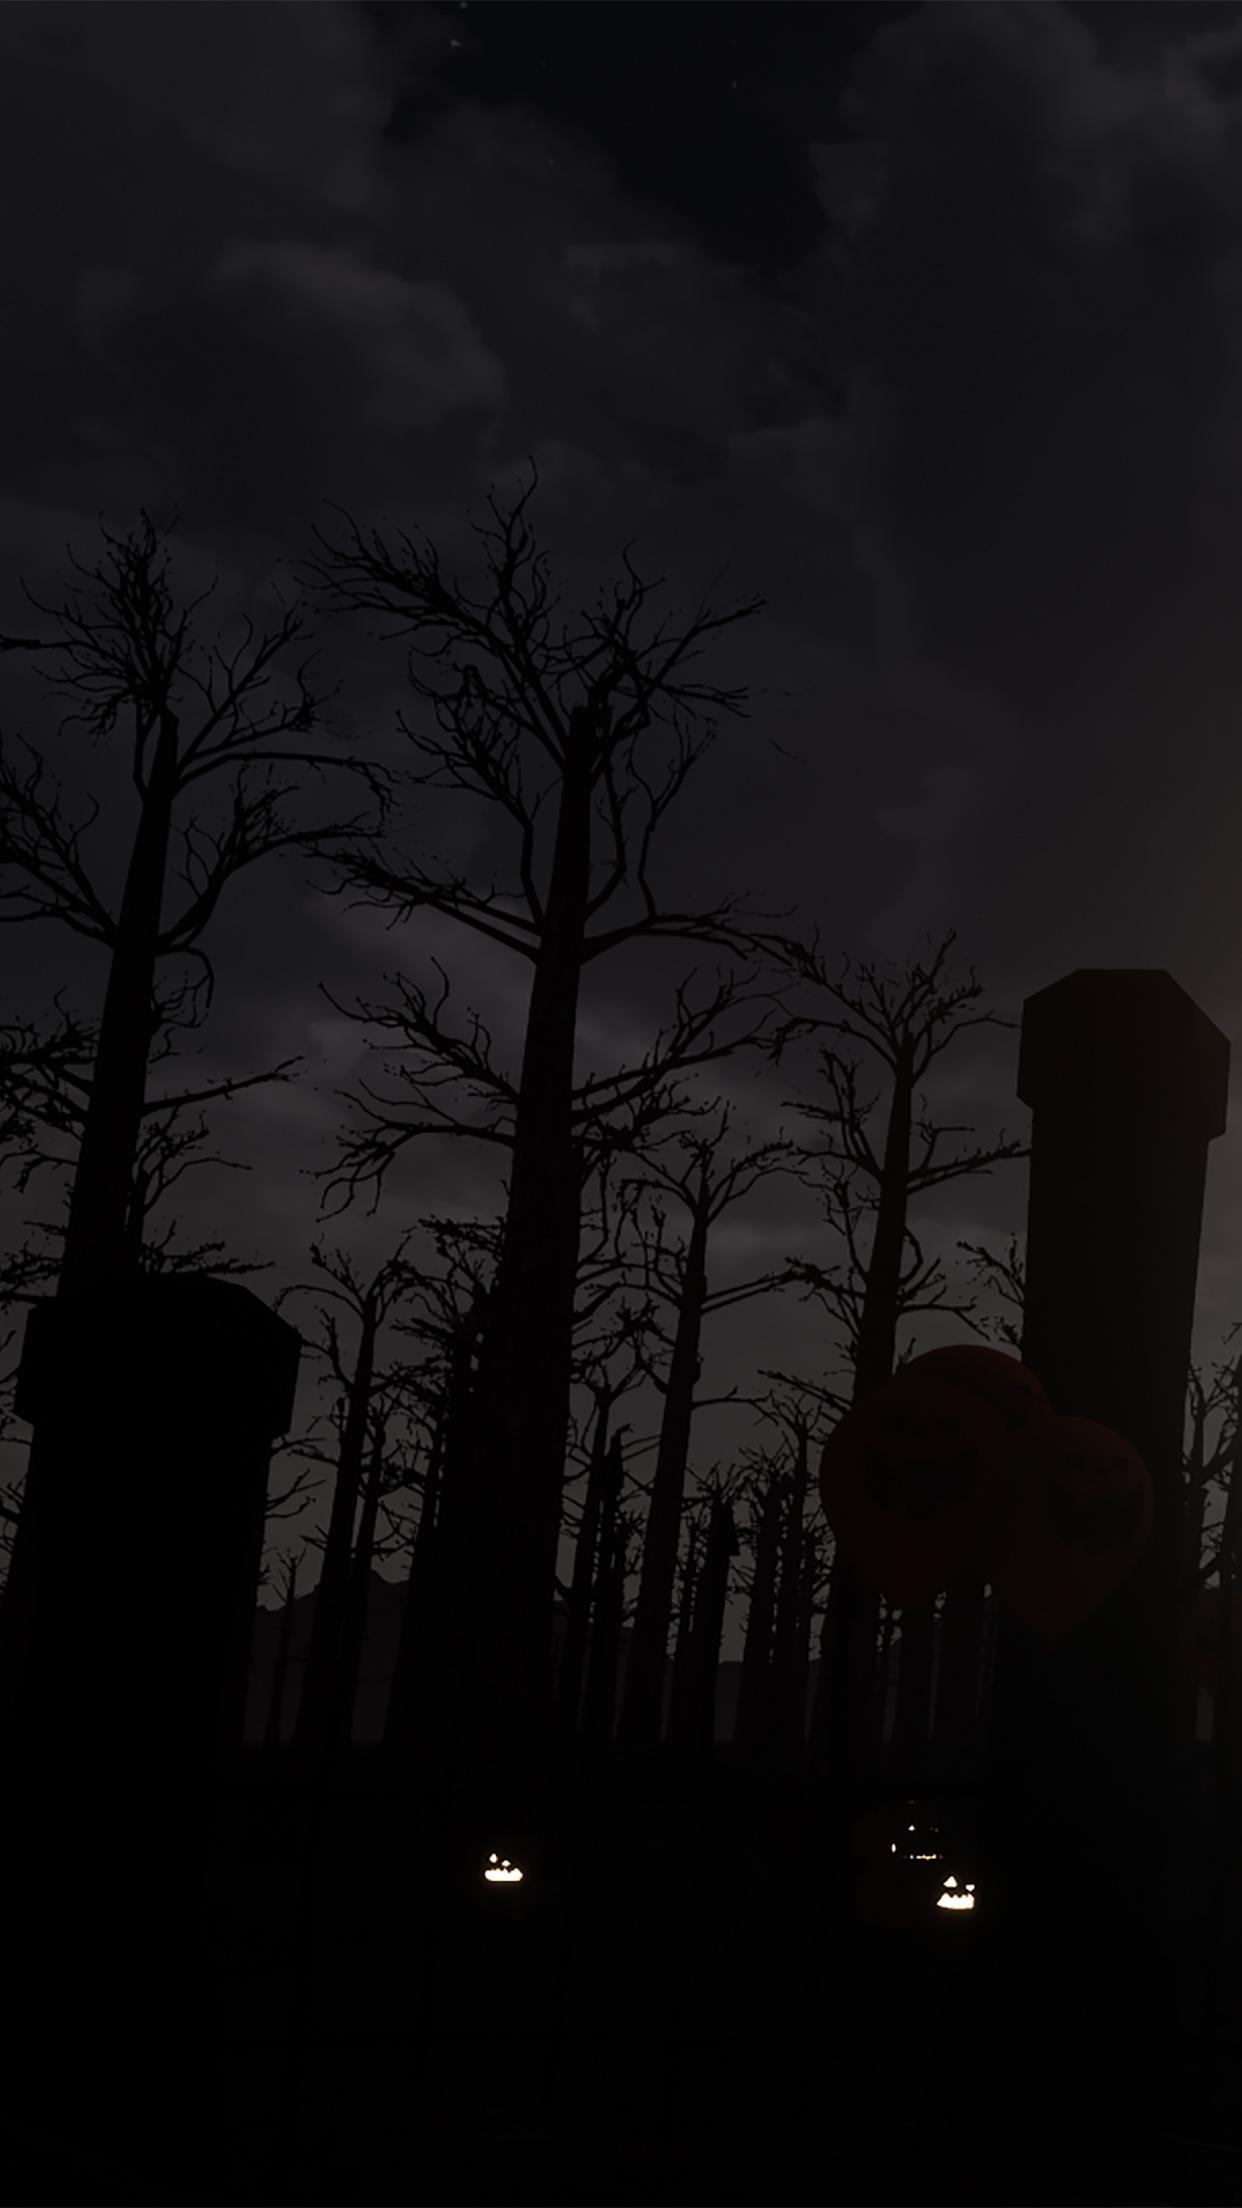 Screenshot 1 of Trò chơi trốn thoát: Ụt! 1.22.2.0